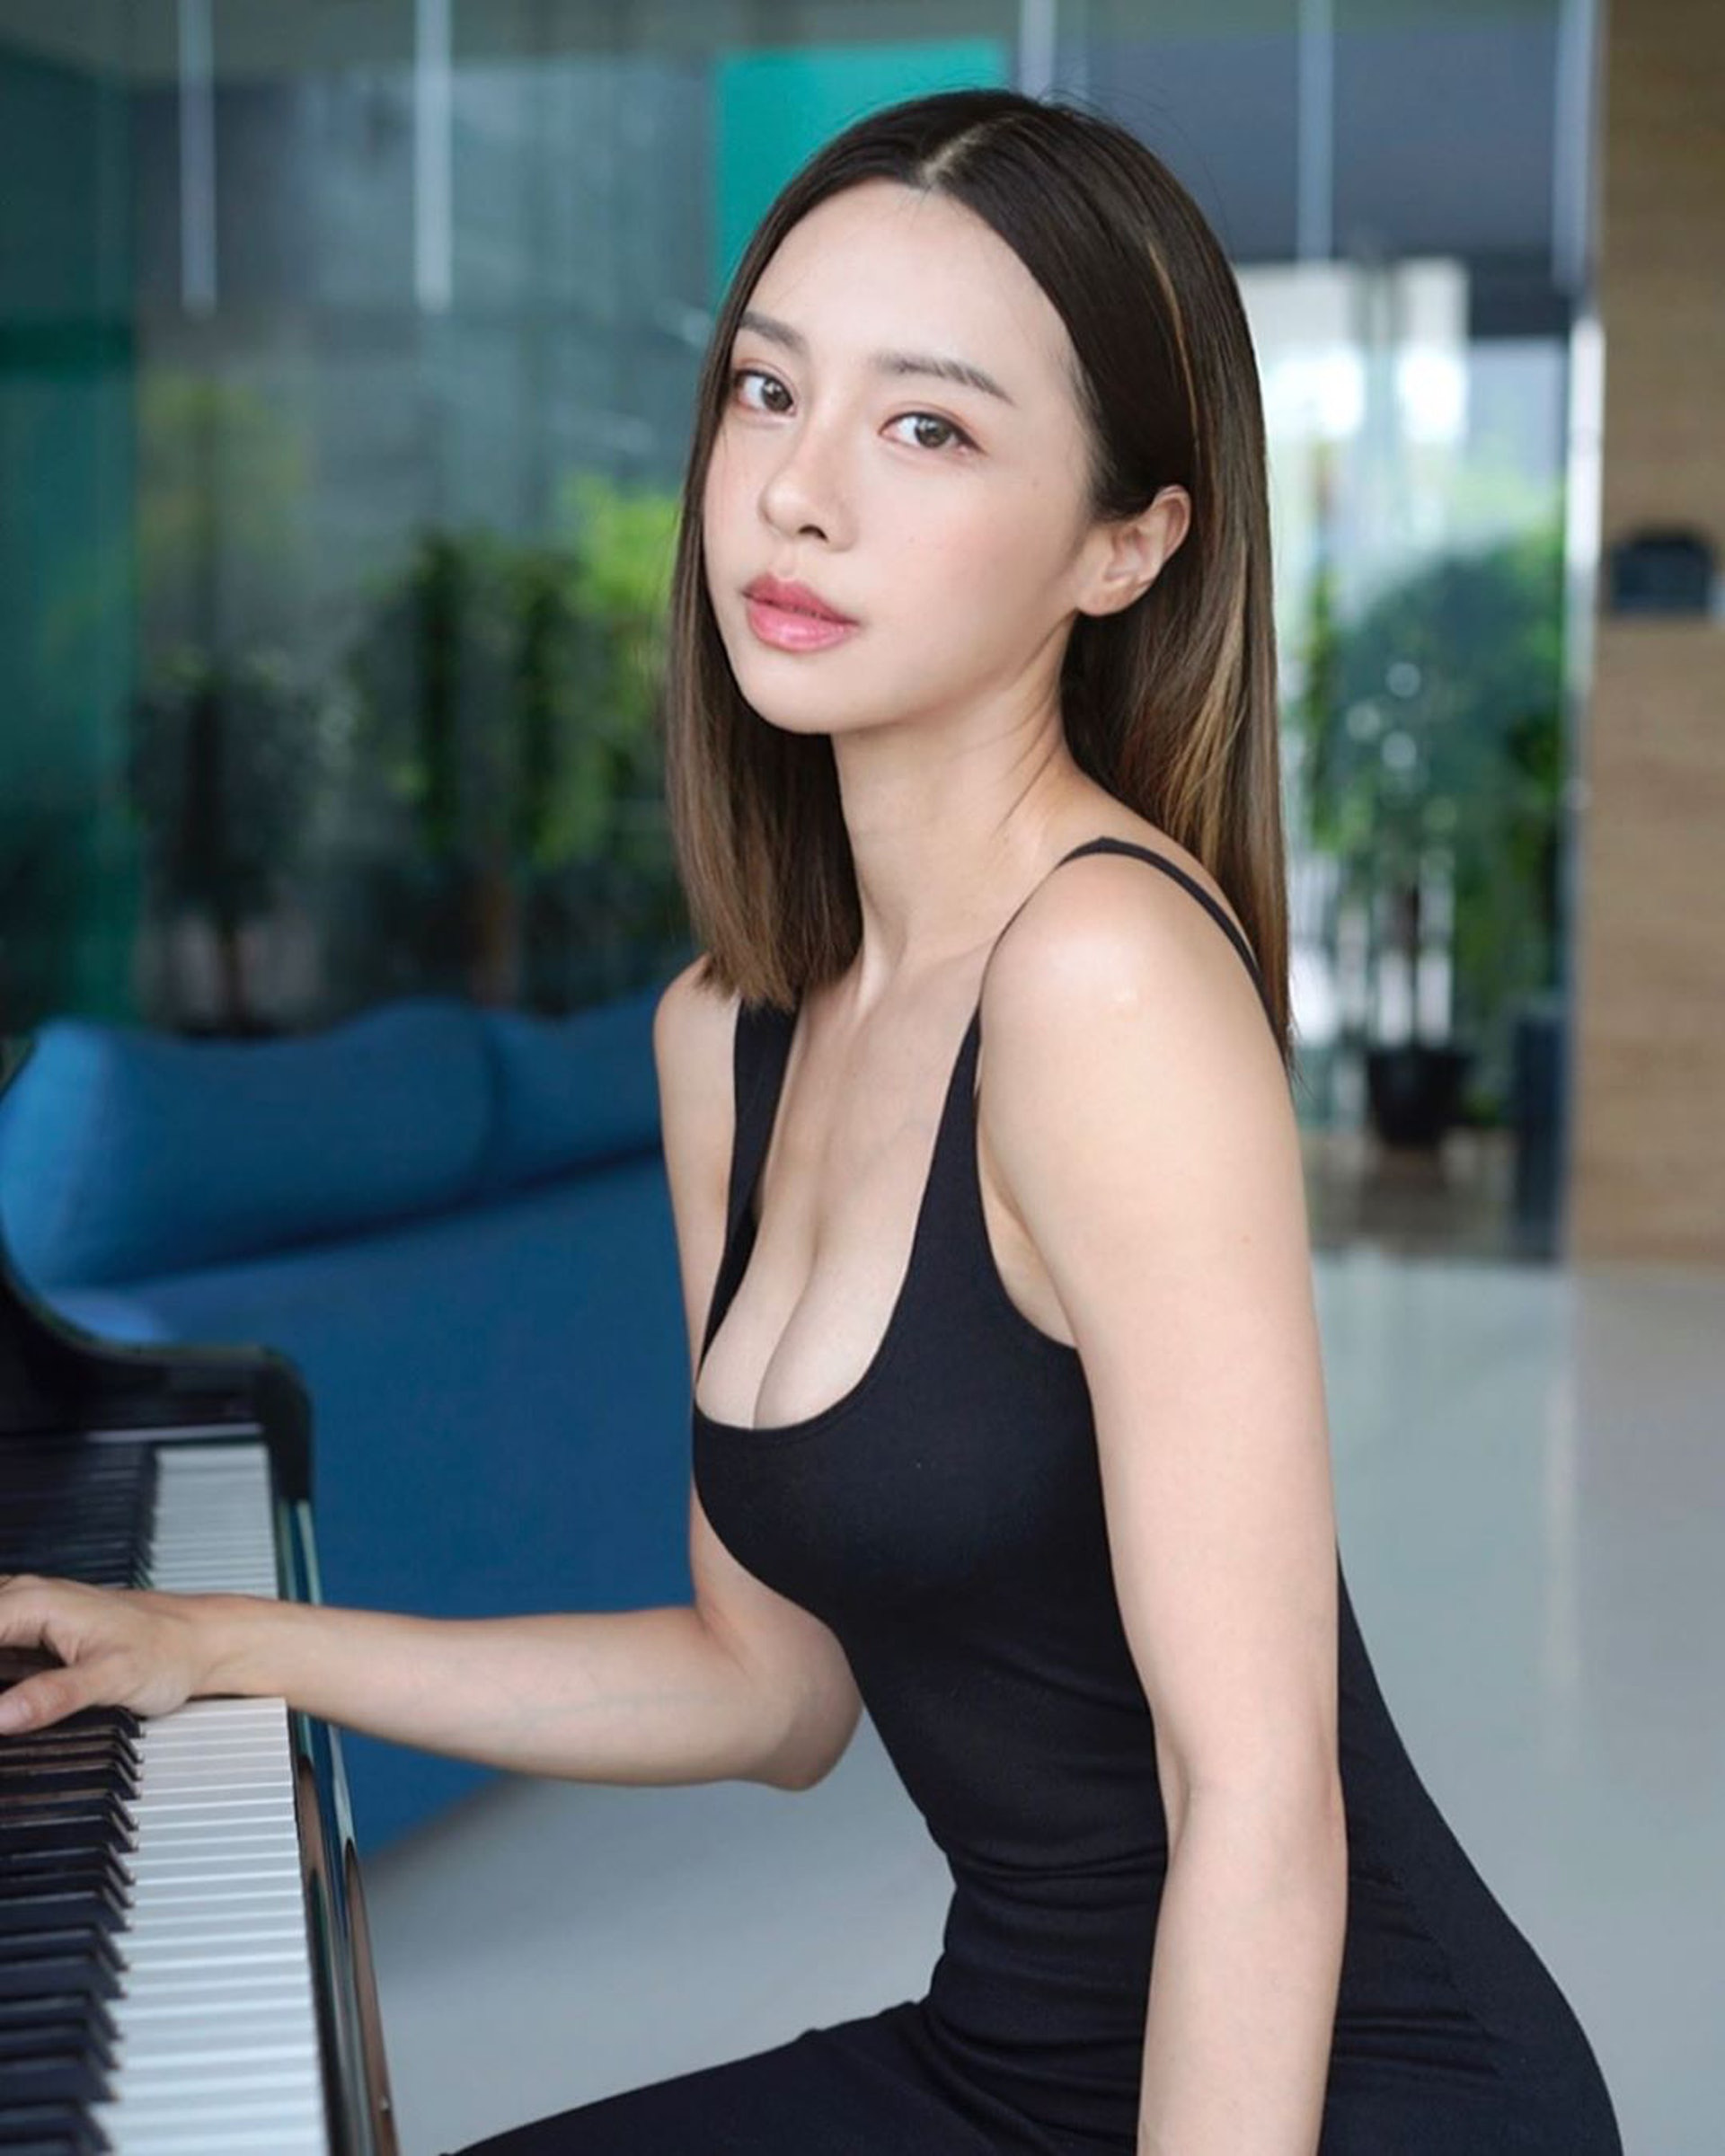 Nhan sắc bốc lửa của “nữ thần piano” gợi cảm nhất châu Á - Ảnh 1.